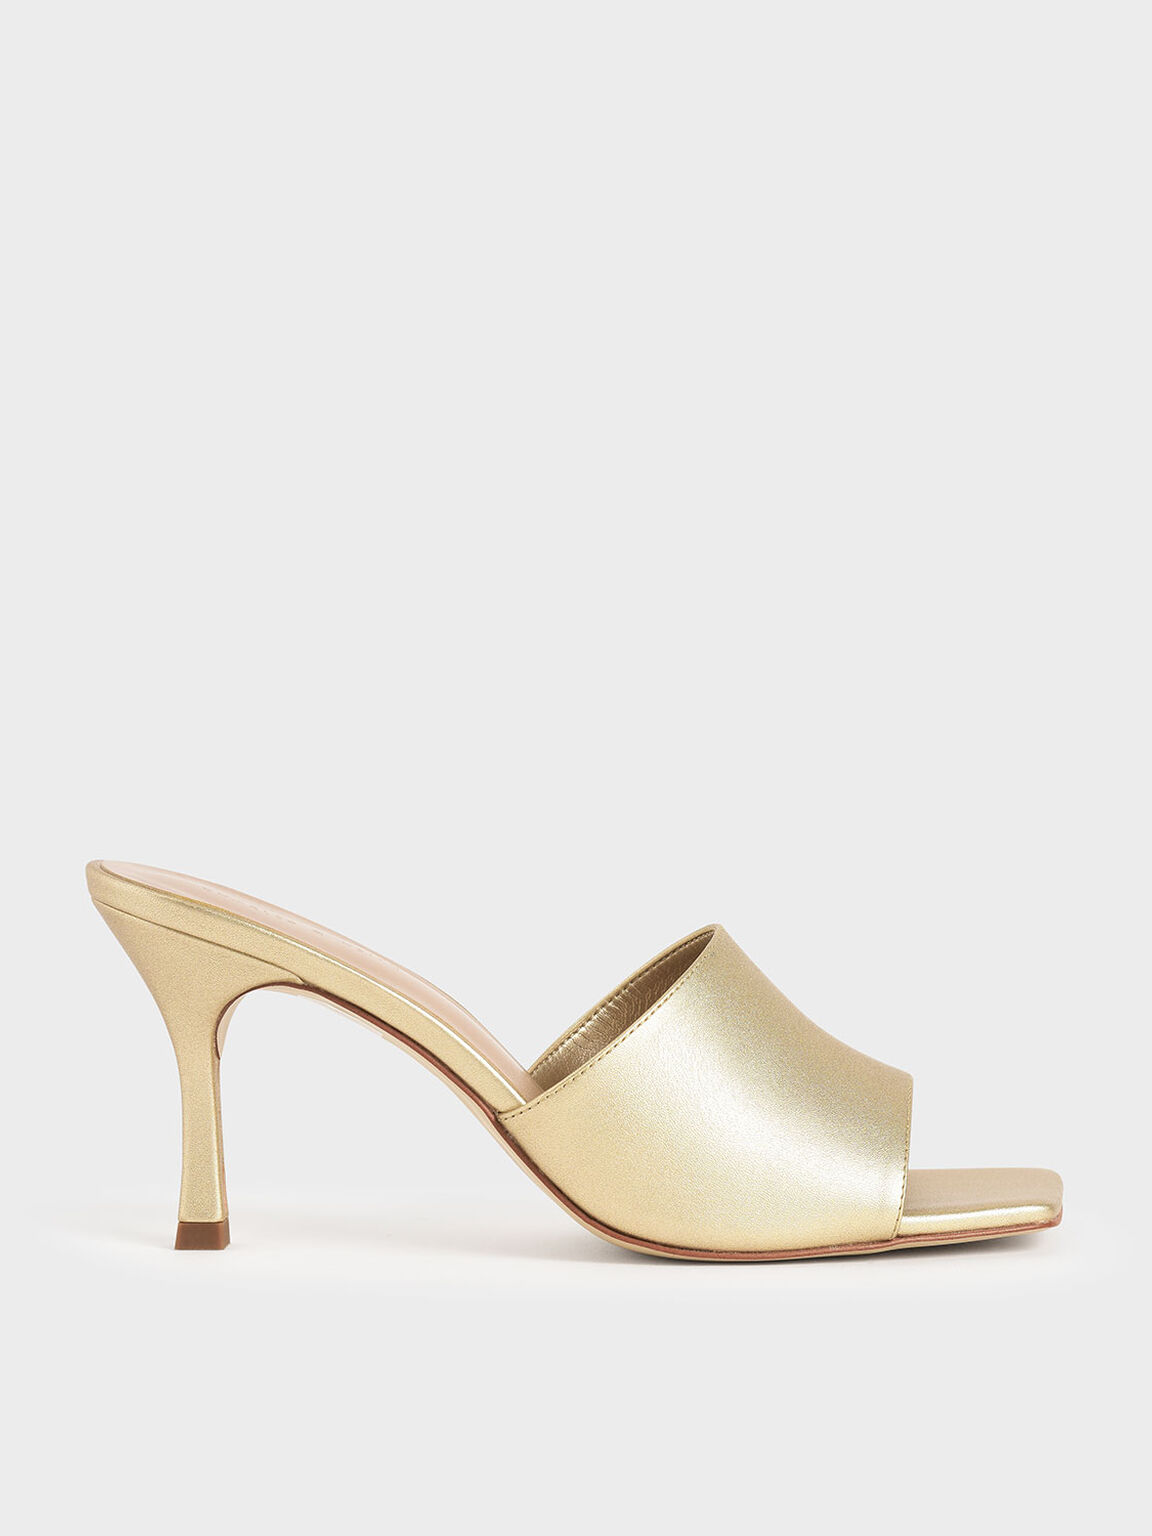 Sandal Mules Metallic Square Toe, Gold, hi-res